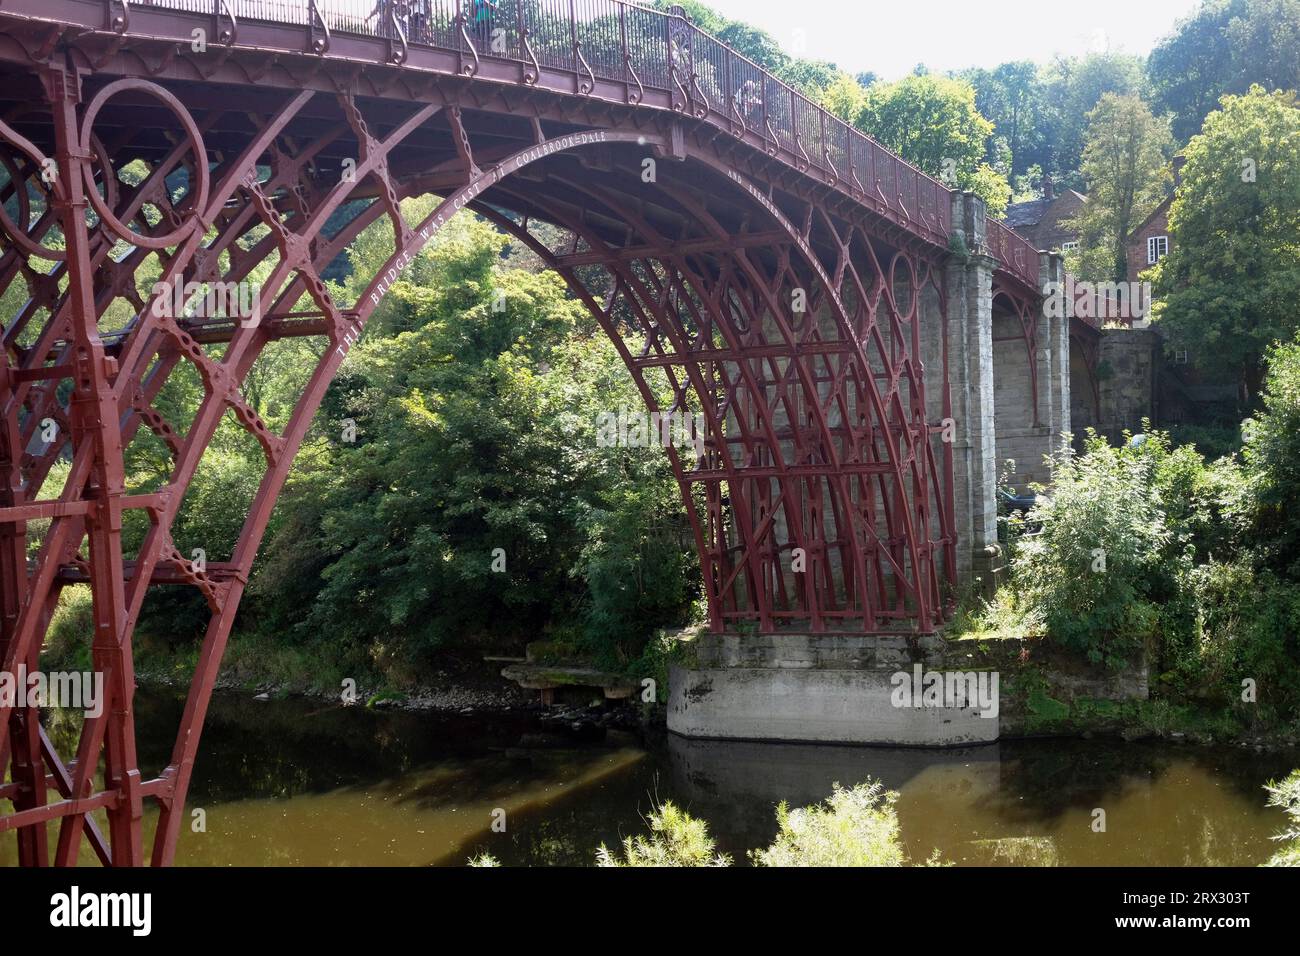 Inghilterra, Shropshire, Ironbridge, ponte di ghisa classificato di grado 1 sul fiume Severn. Foto Stock